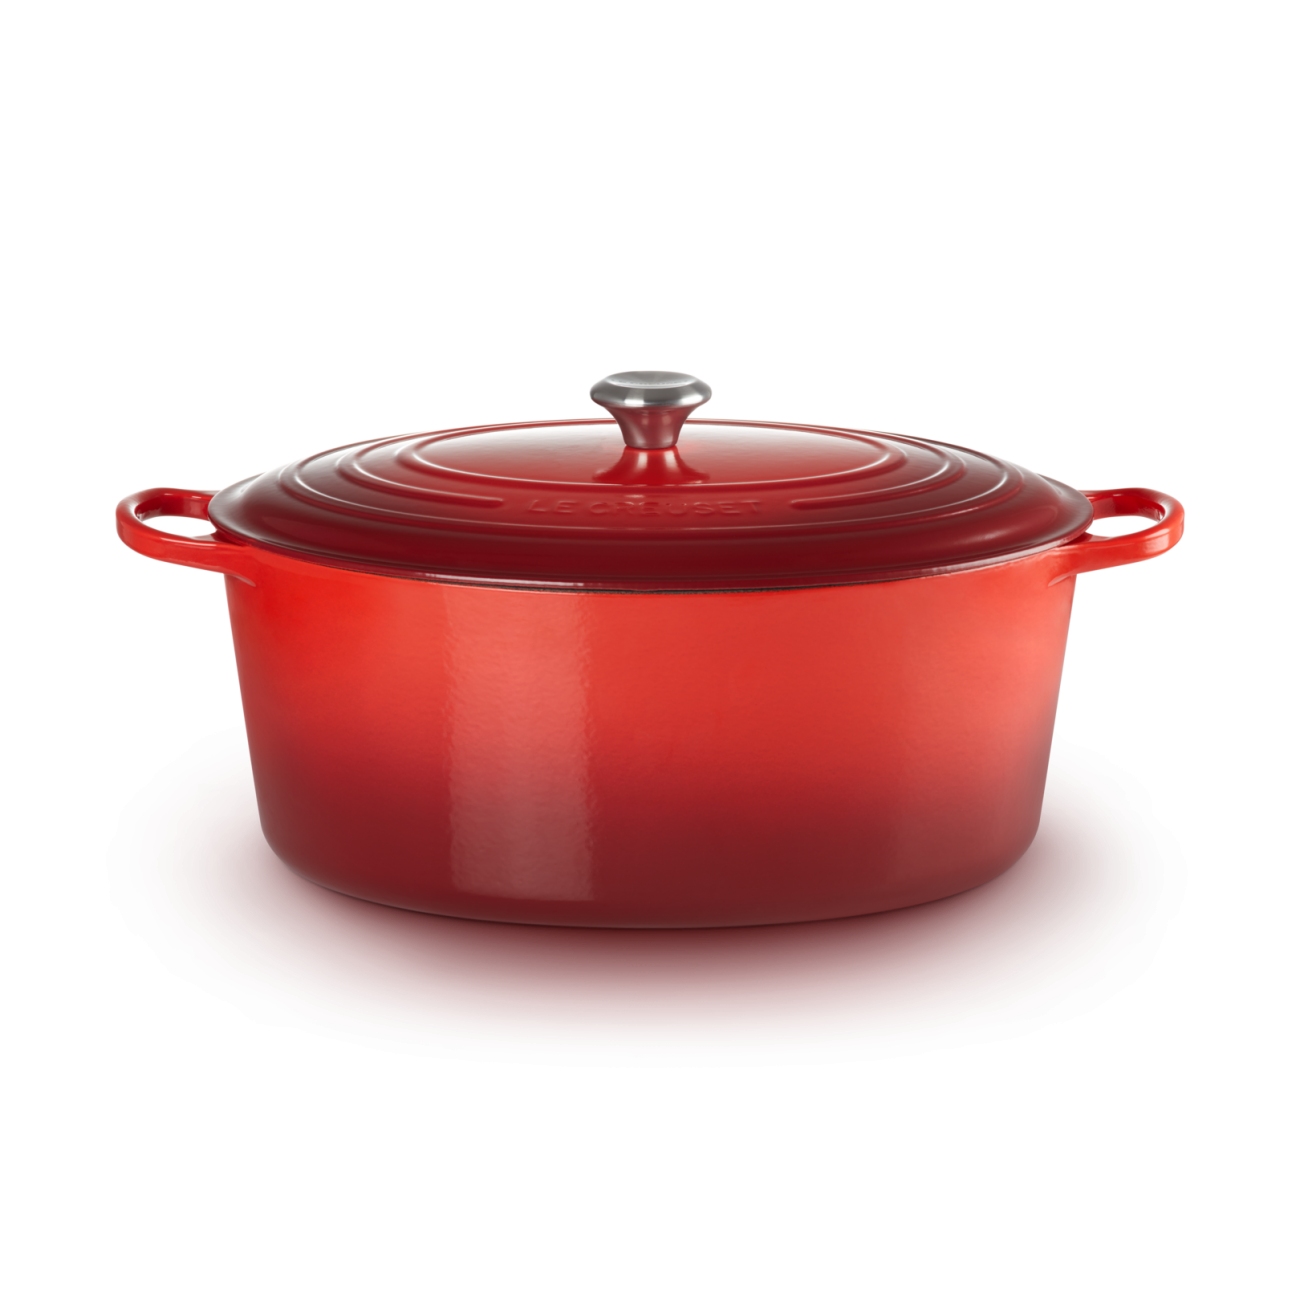 Le Creuset casserole-cocotte oval 31 cm, 6,3 l red